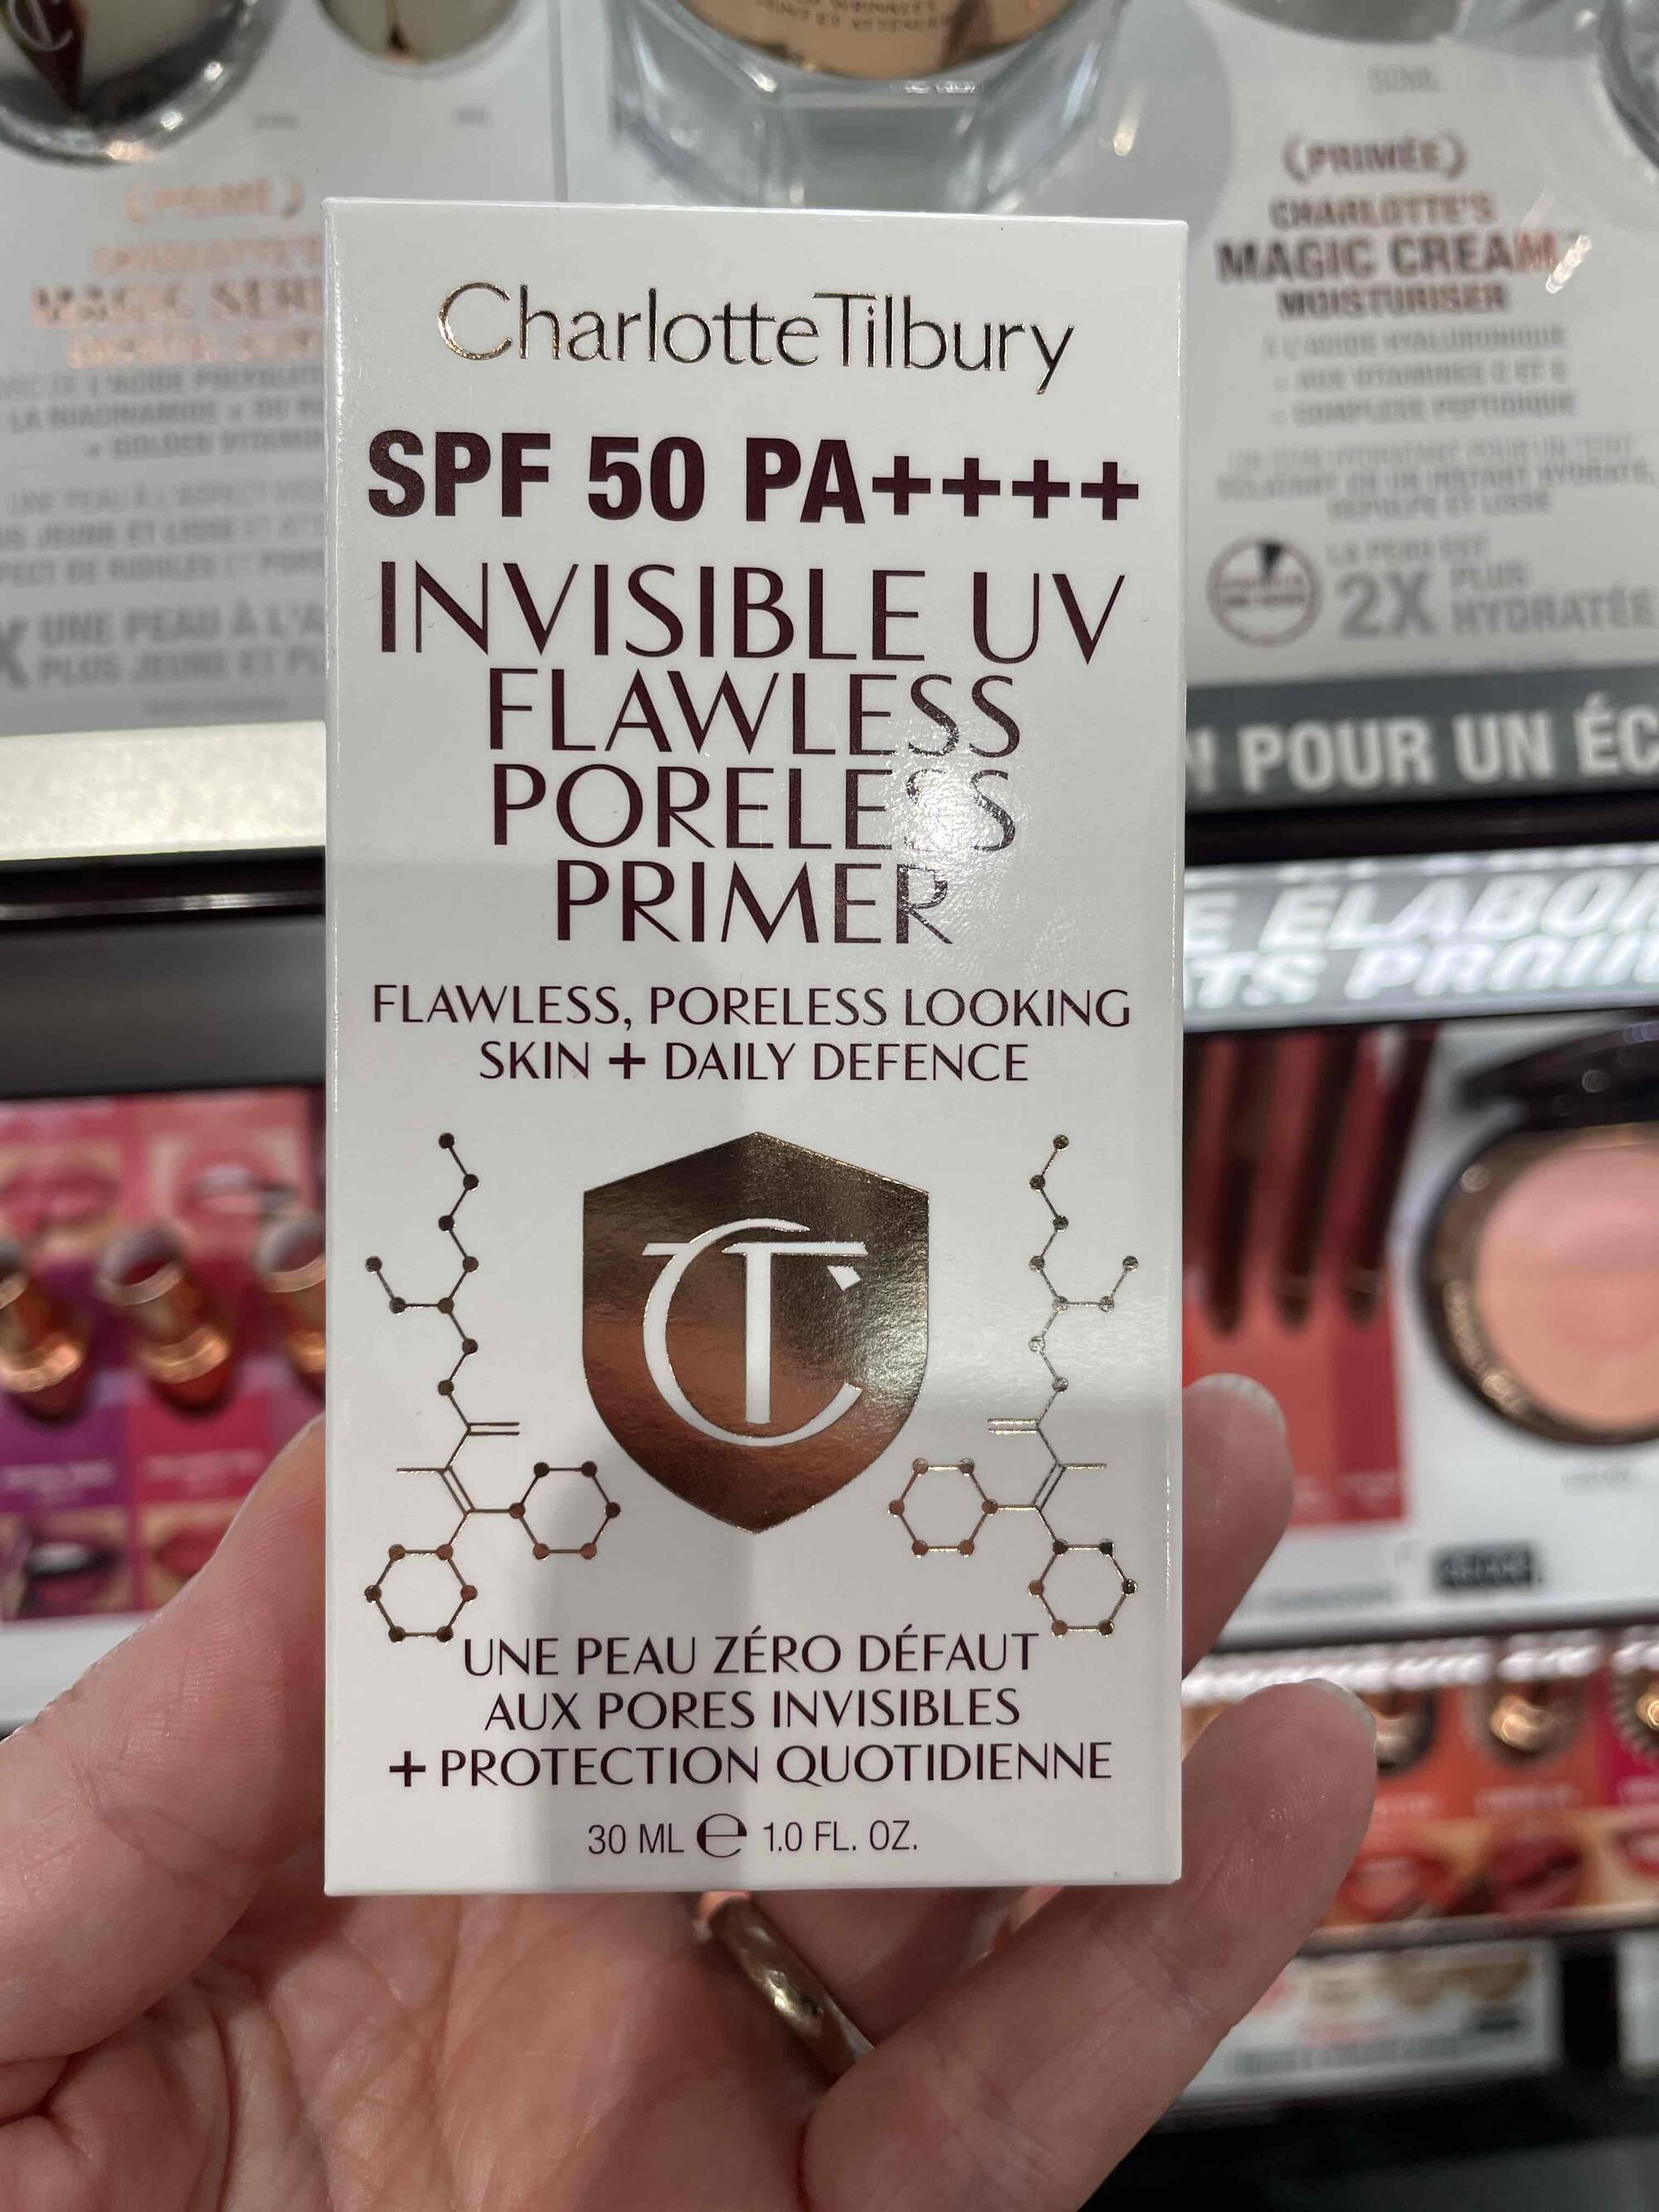 CHARLOTTE TILBURY - Invisible UV flawless poreless primer SPF 50+